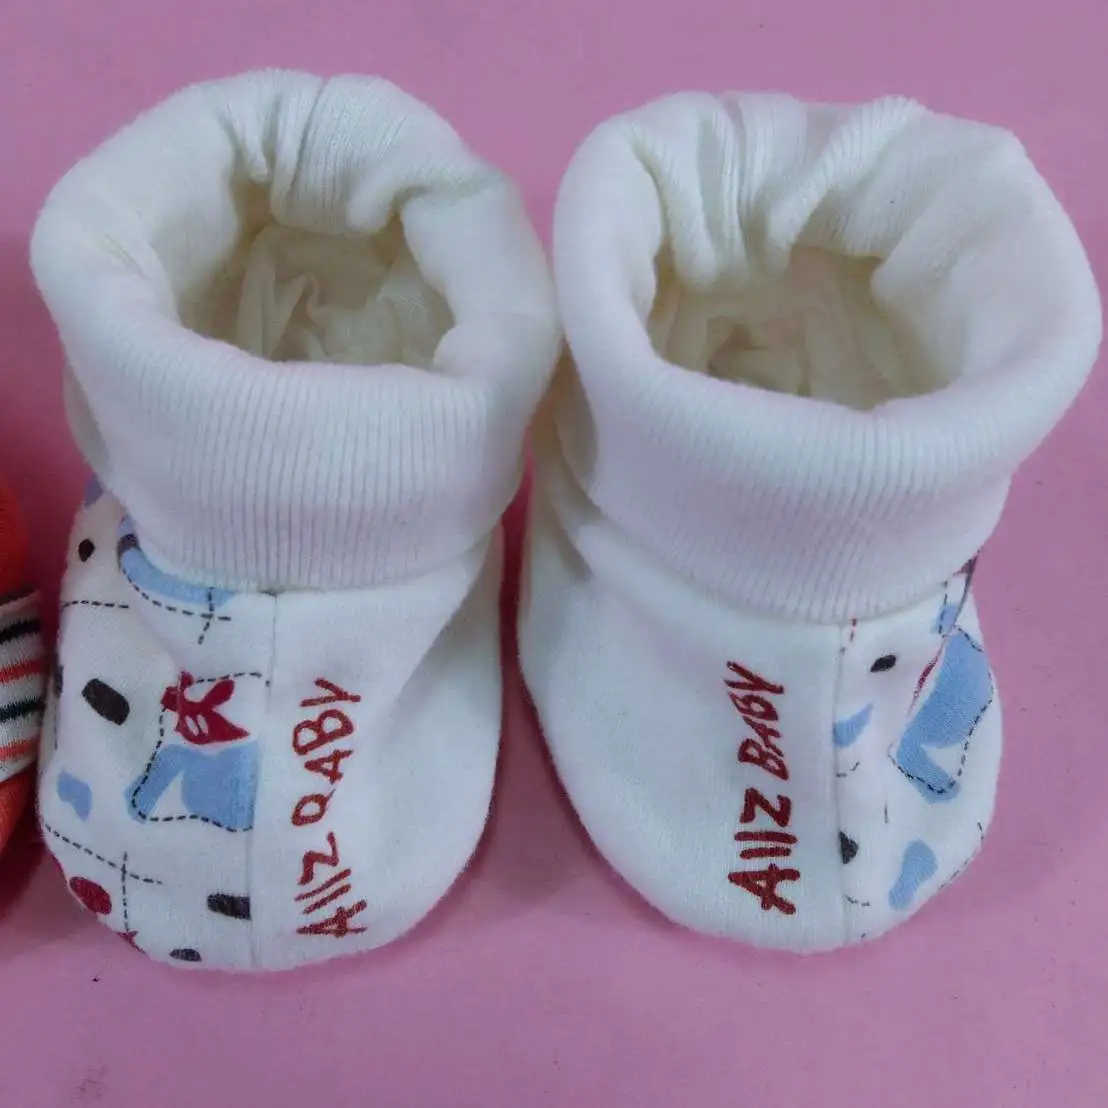 ถุงเท้าทารก​ AIIZ baby 2 คู่